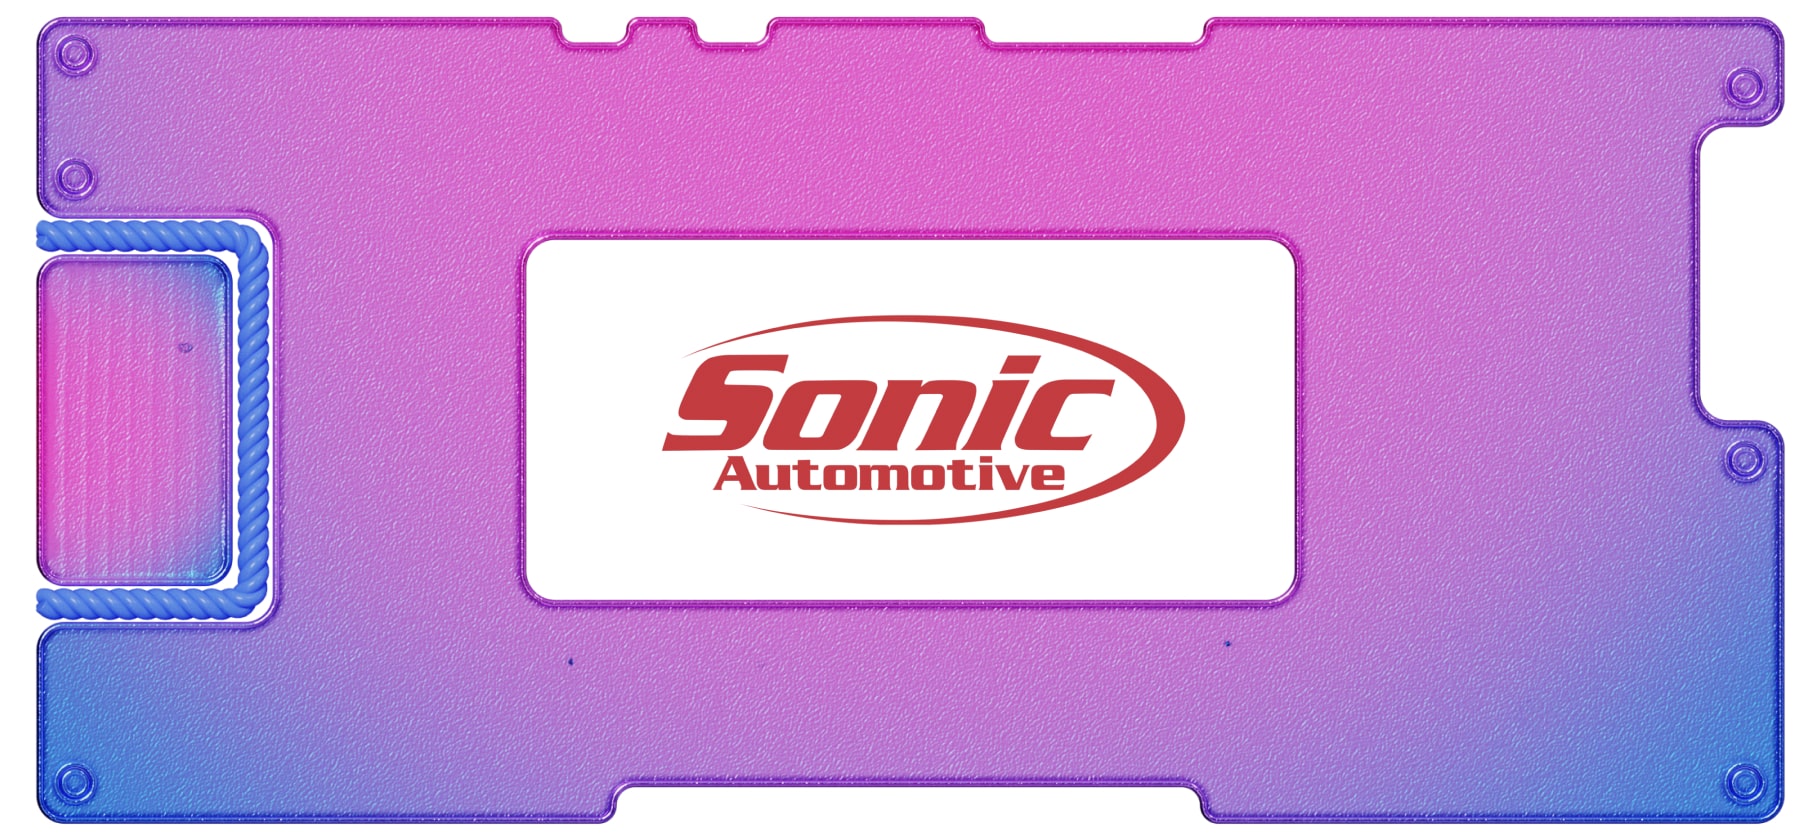 Обзор Sonic Automotive: машины, Техас и запчасти